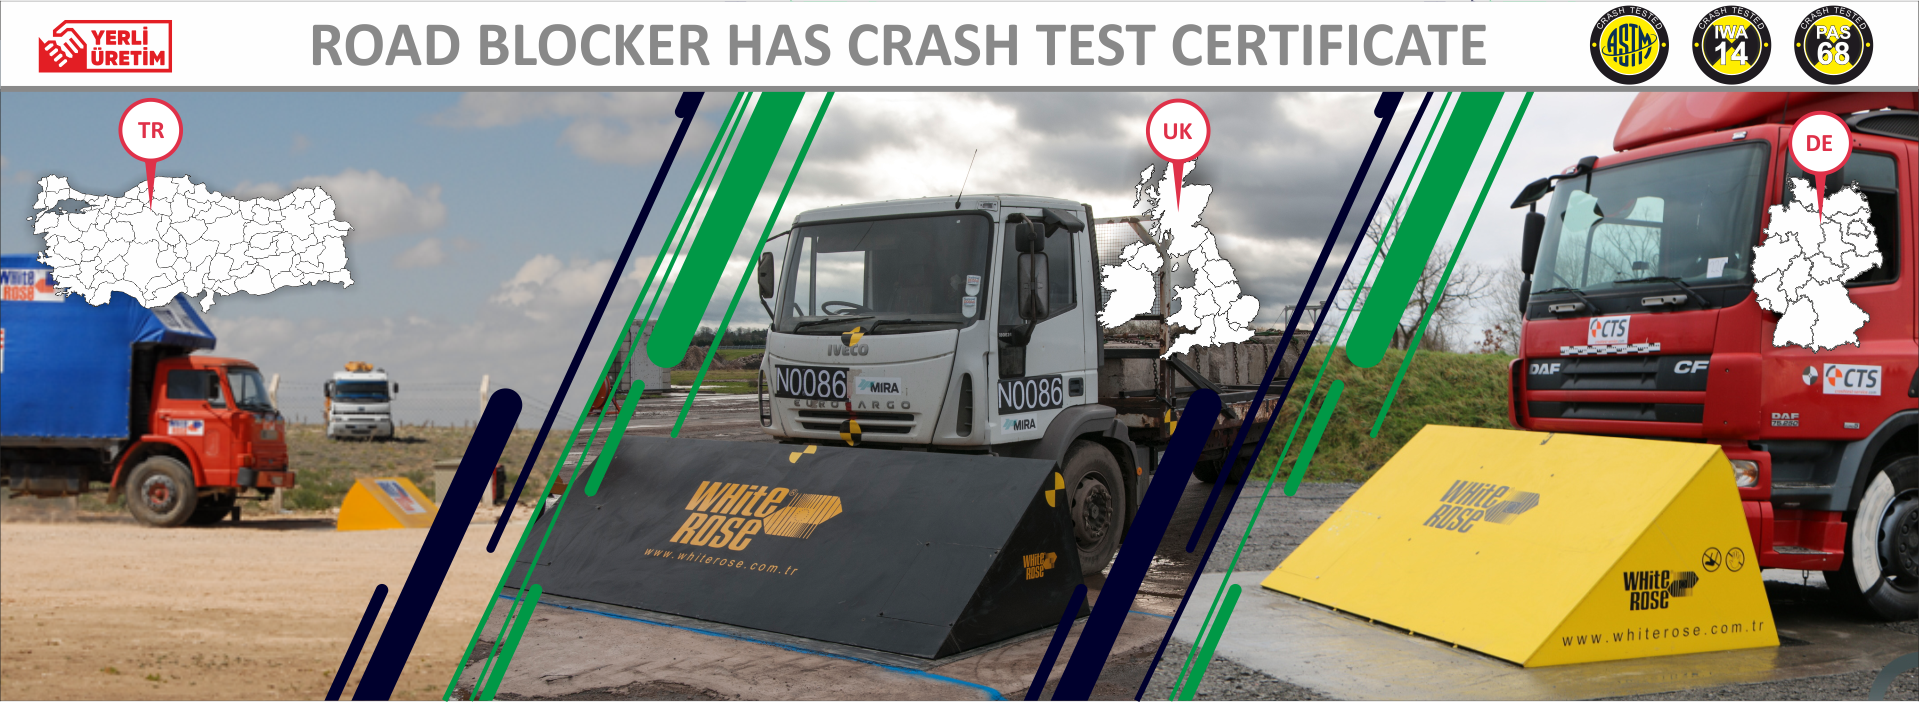 Bloqueurs de route certifiés Crash Test